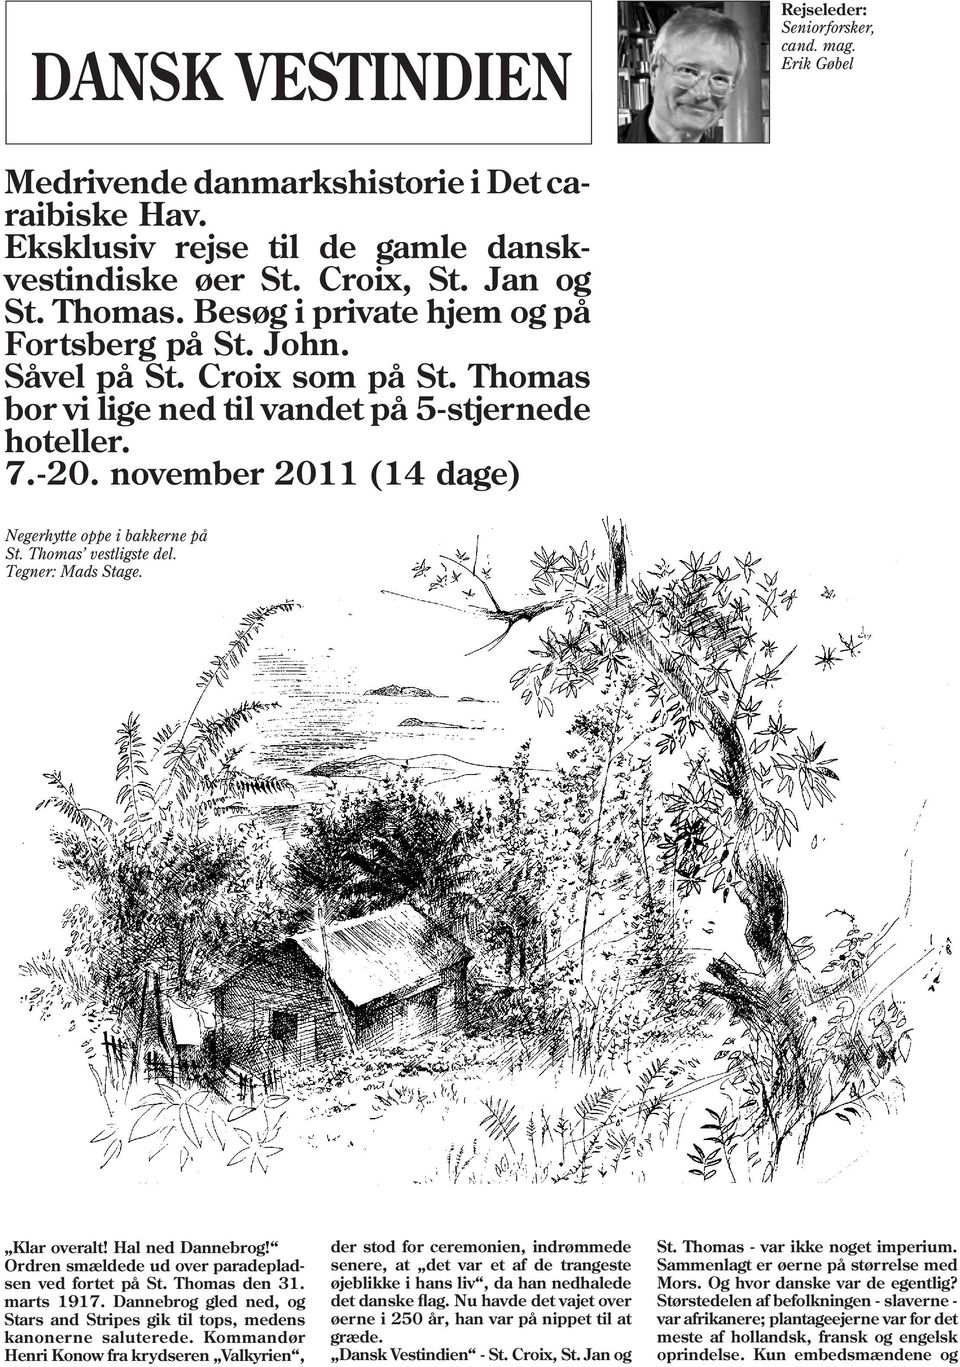 november 2011 (14 dage) Negerhytte oppe i bakkerne på St. Thomas vestligste del. Klar overalt! Hal ned Dannebrog! Ordren smældede ud over paradepladsen ved fortet på St. Thomas den 31. marts 1917.